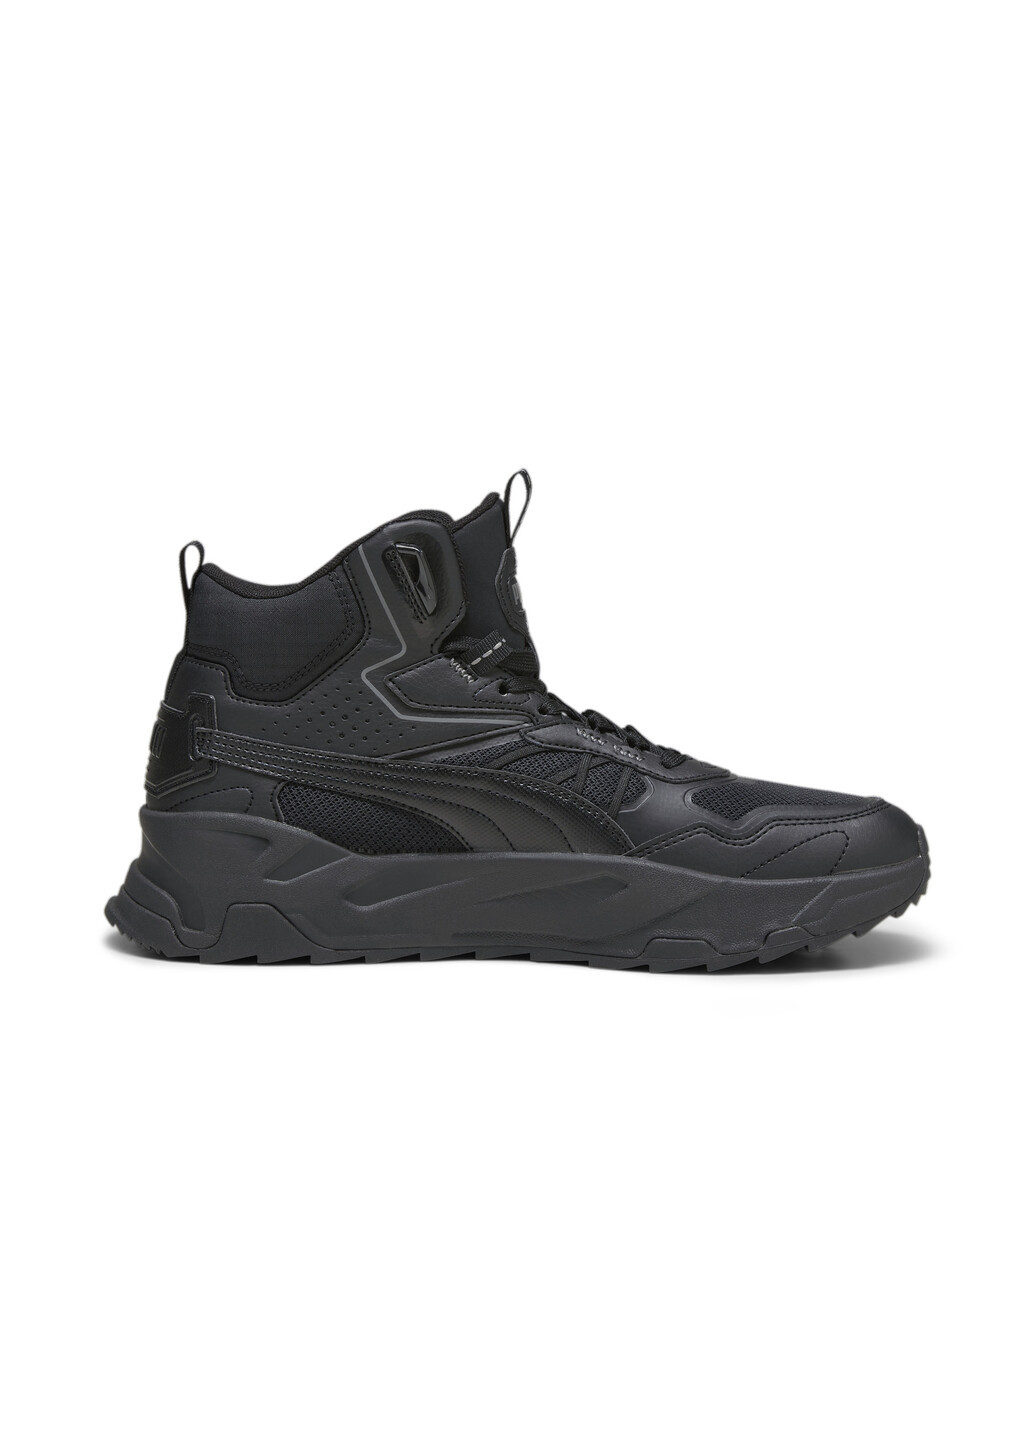 Черные кроссовки trinity mid hybrid men’s sneakers Puma